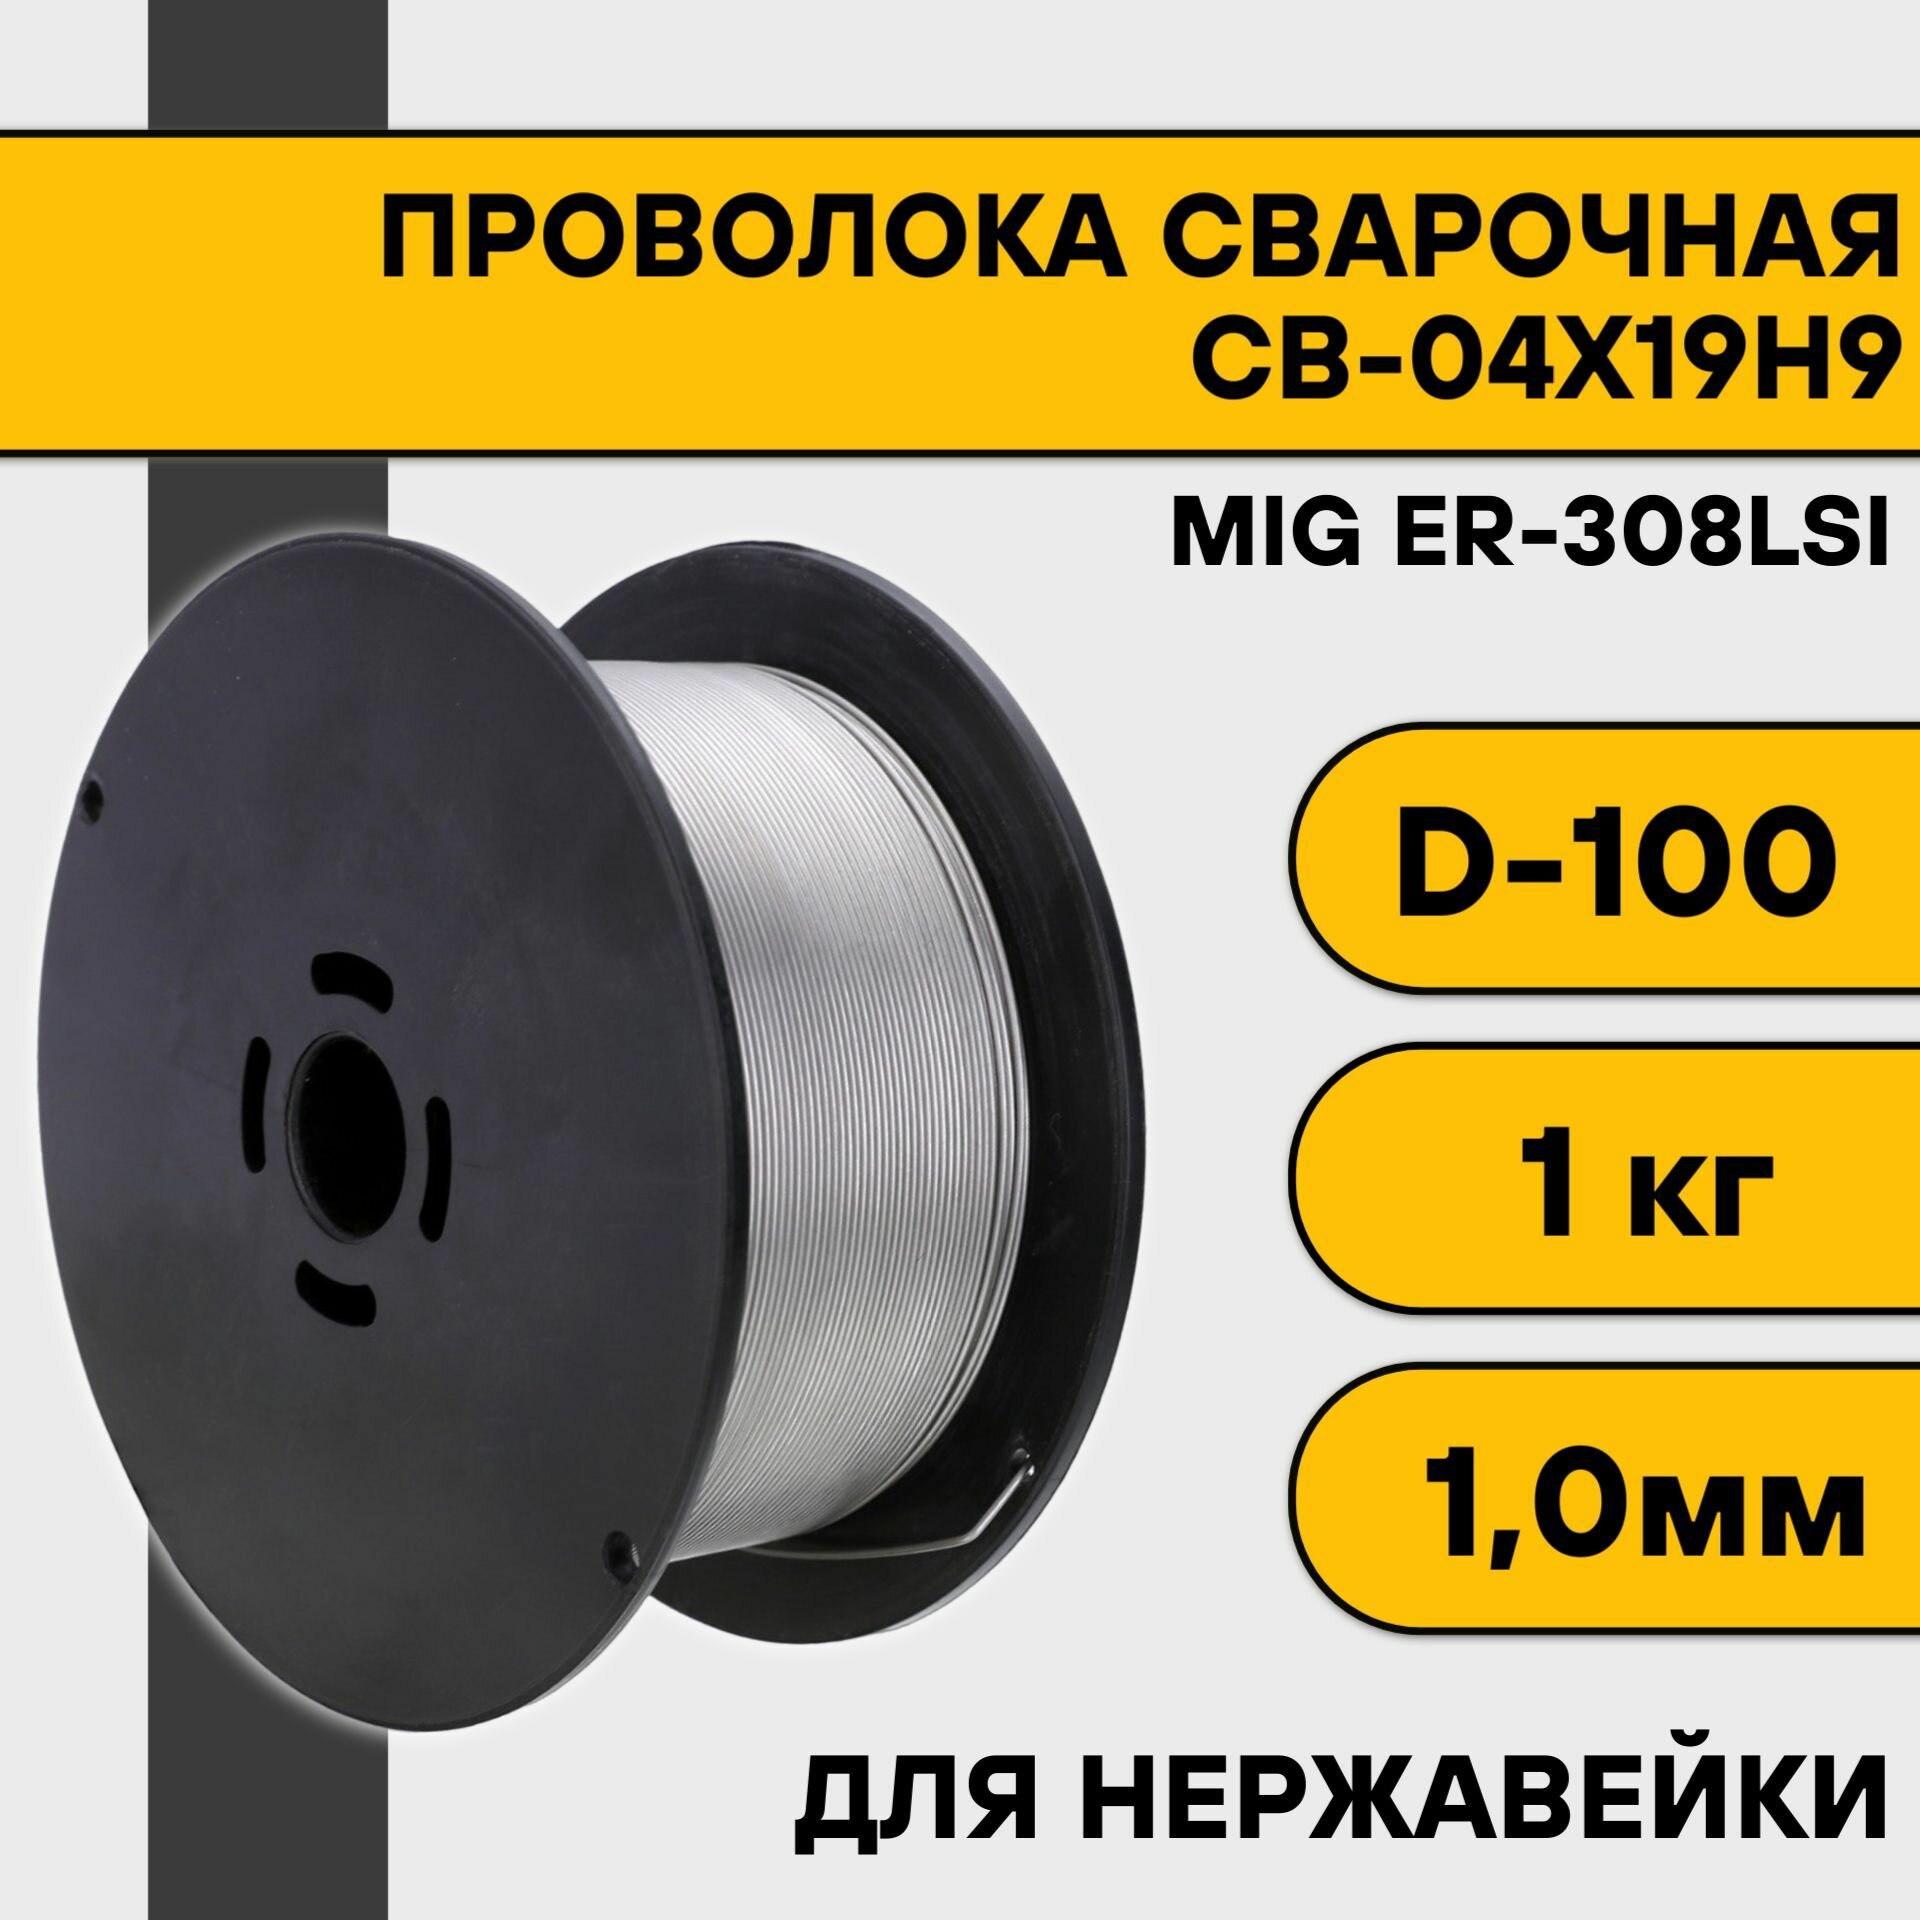 Проволока сварочная MIG ER-308Lsi (Св-04Х19Н9) ф 10 мм (15 кг)